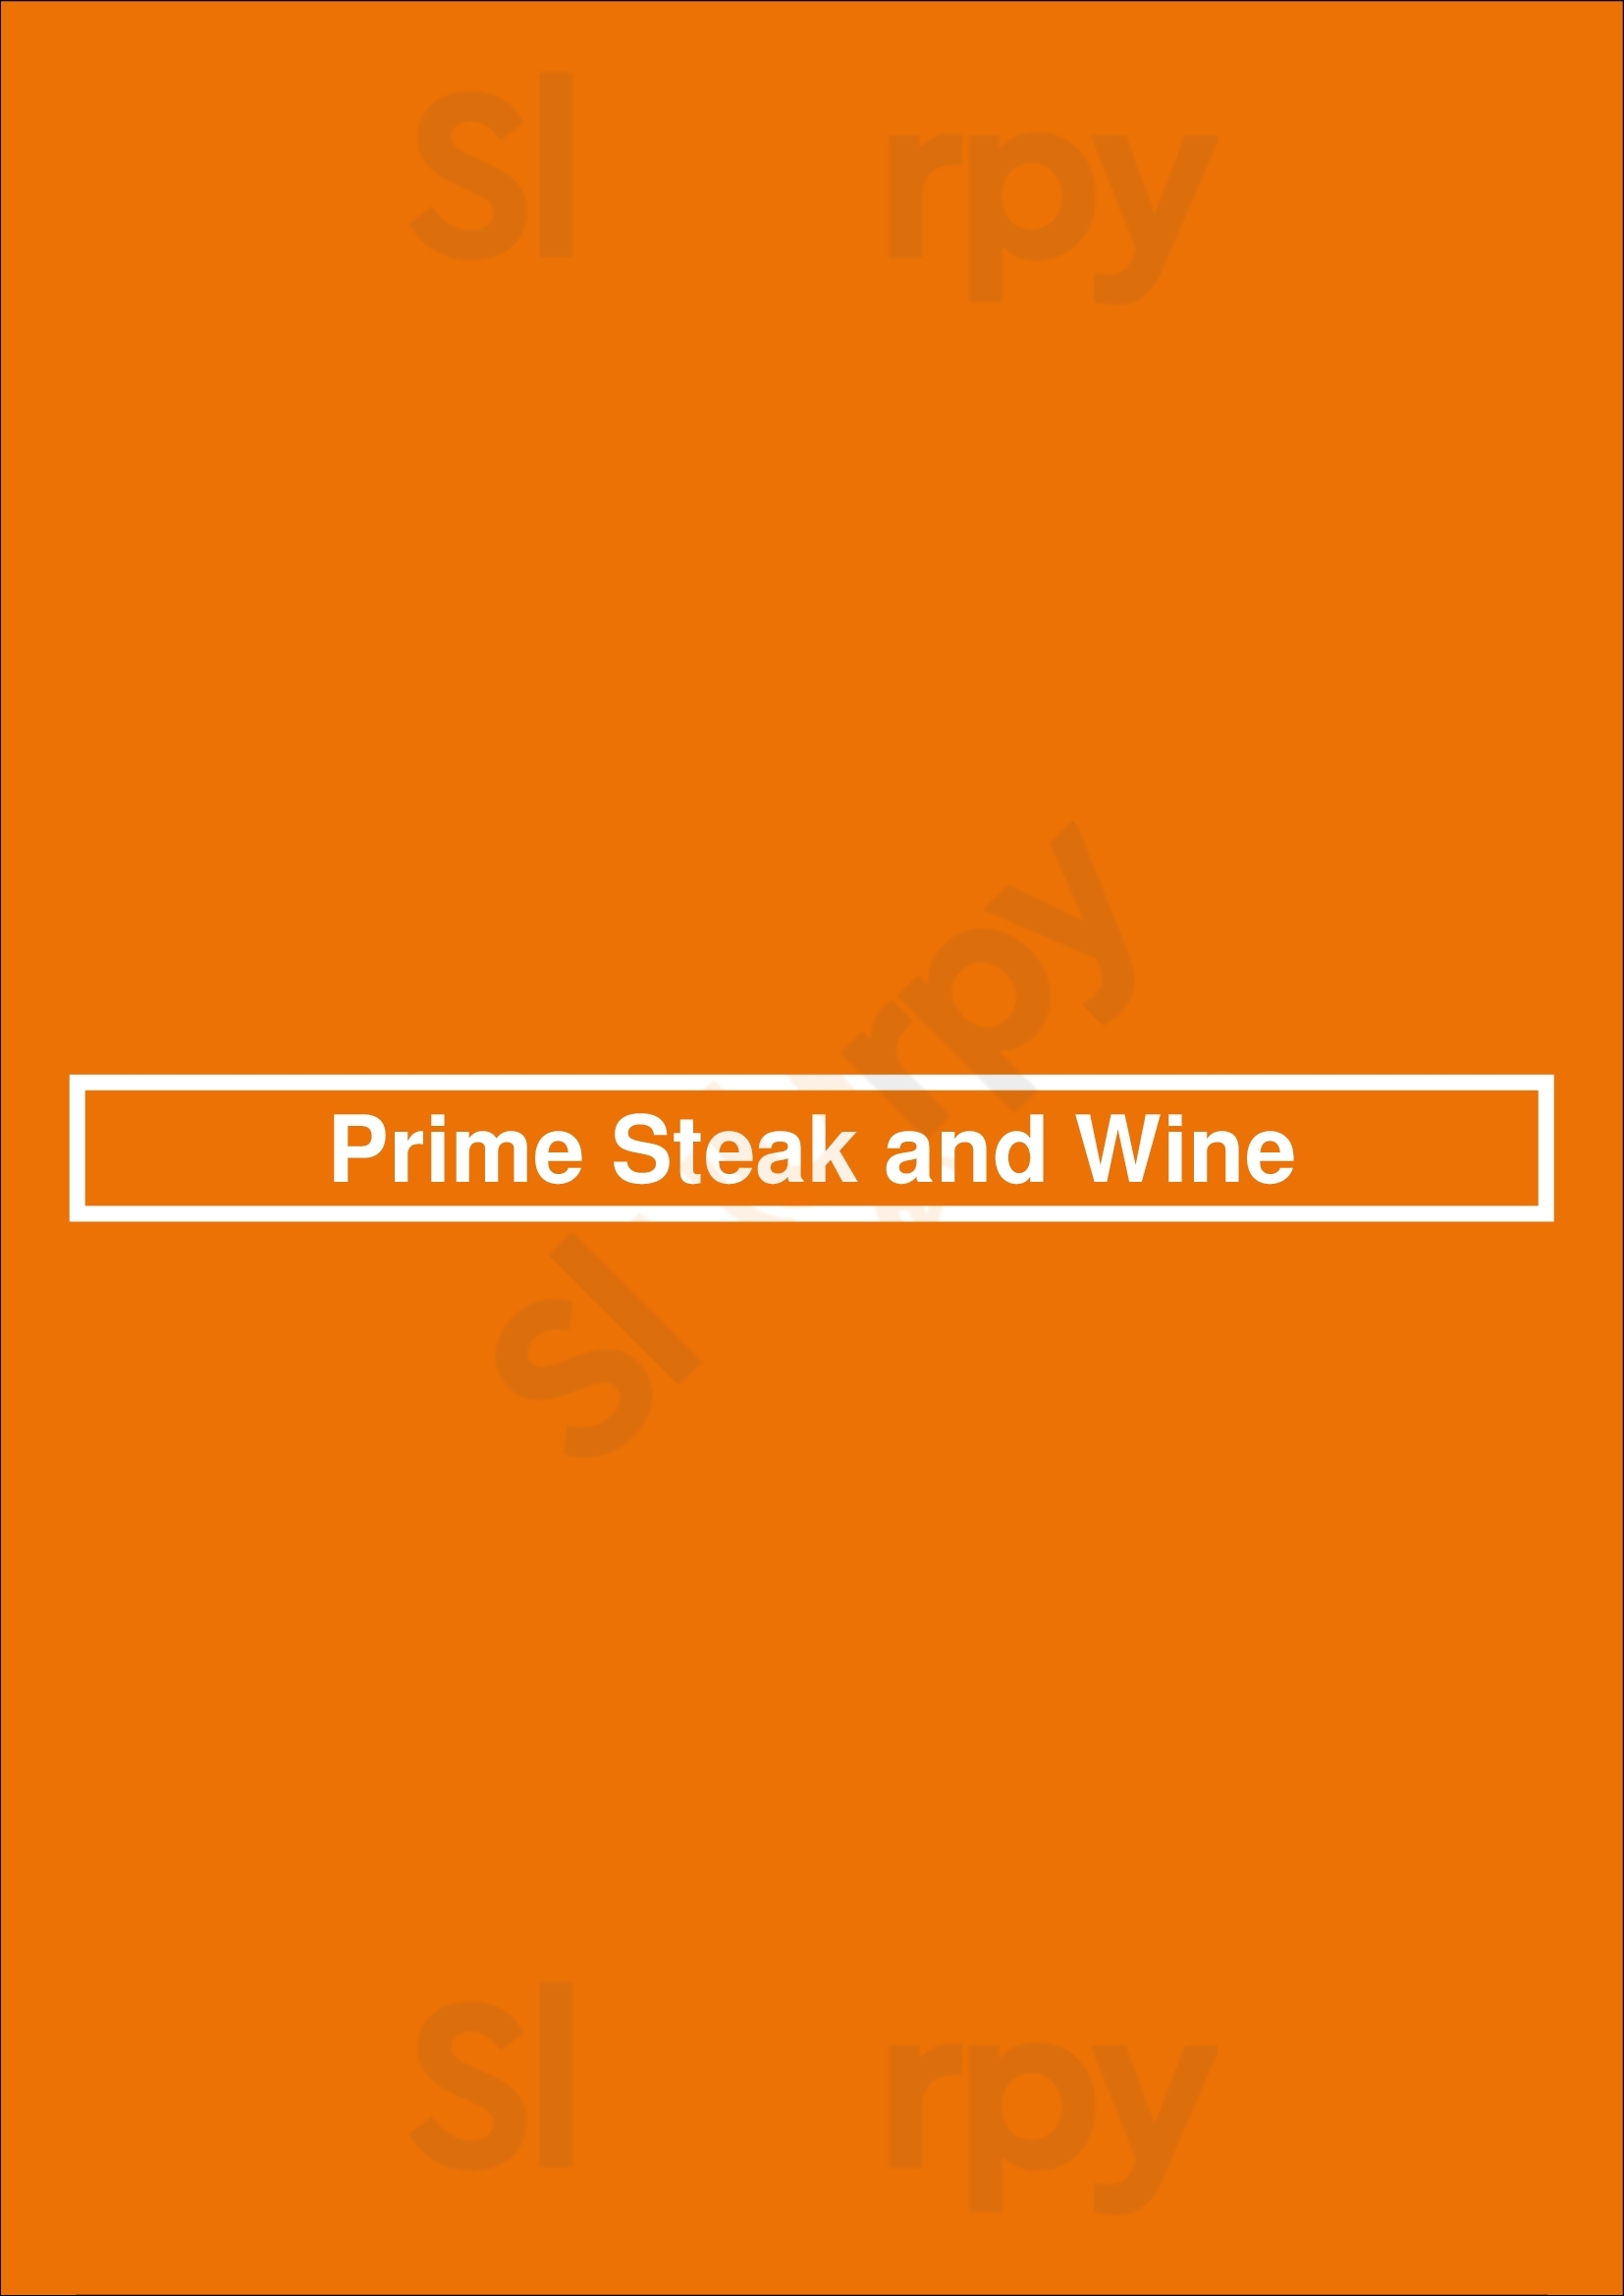 Prime Steak And Wine Budapest Menu - 1